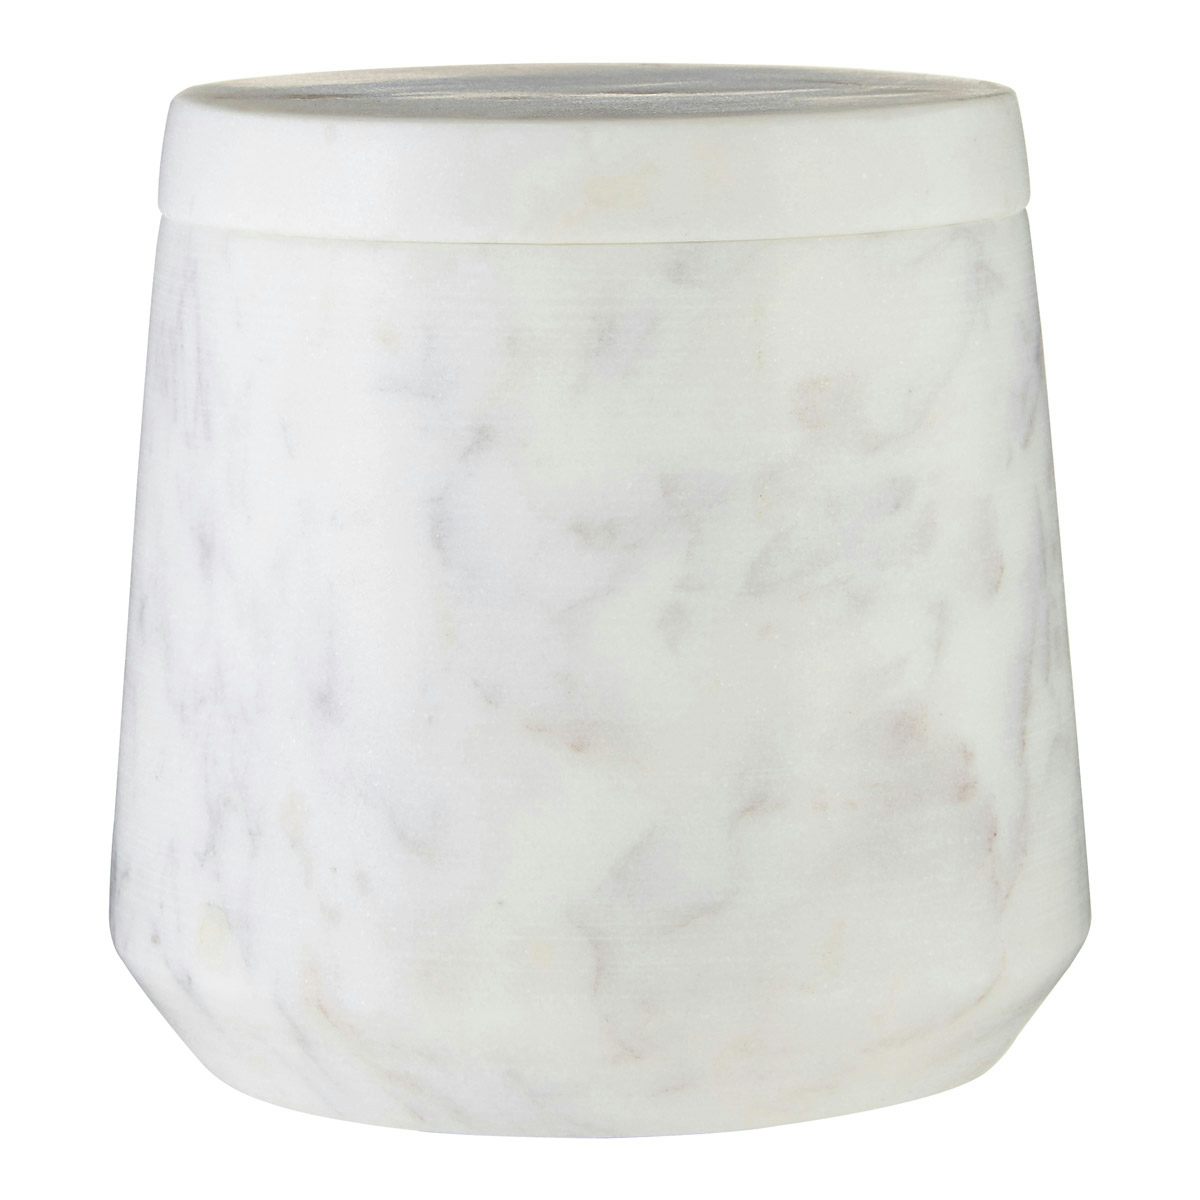 Accents White marble storage jar